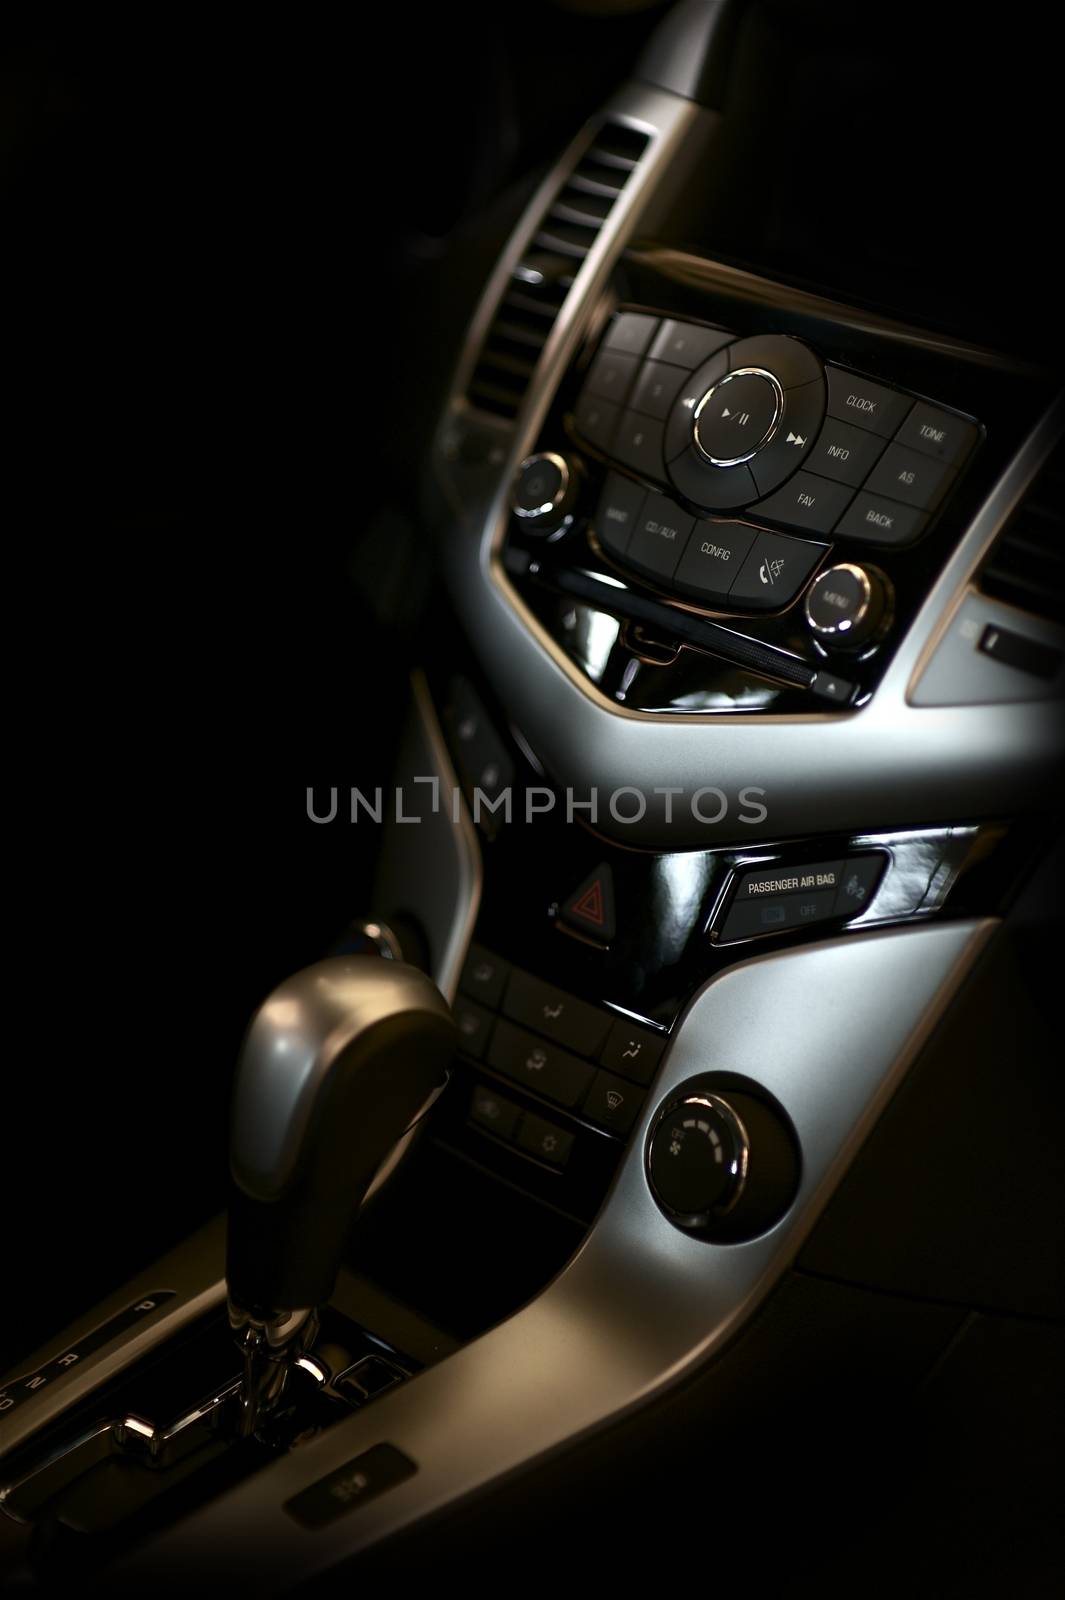 Dark Vehicle Interior by welcomia